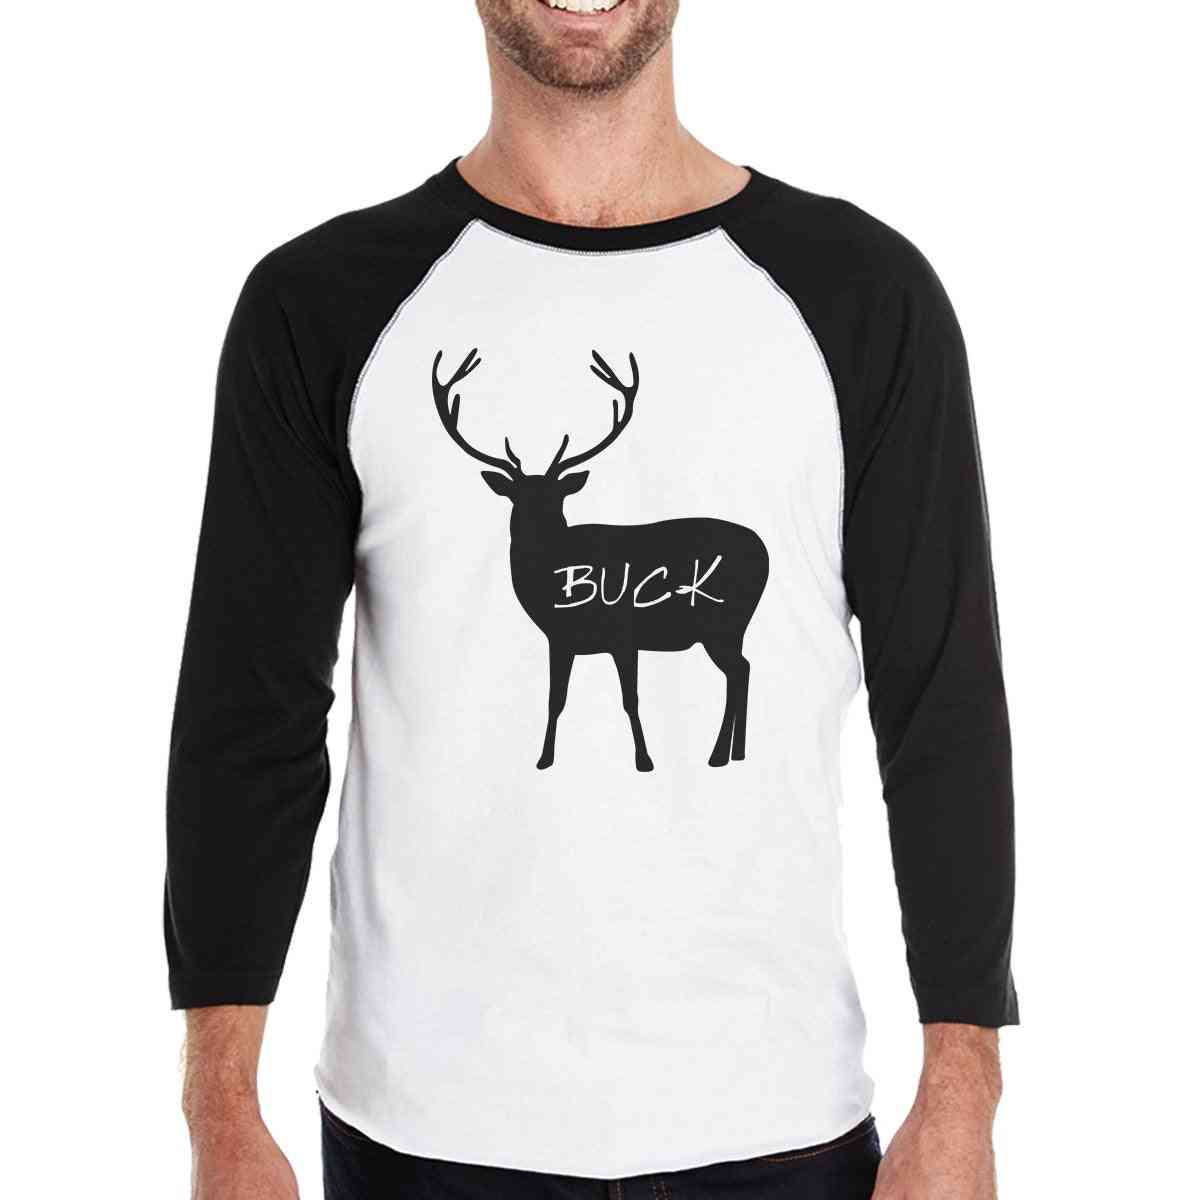 Buck doe och fawn- mäns svartvita baseball-t-shirt